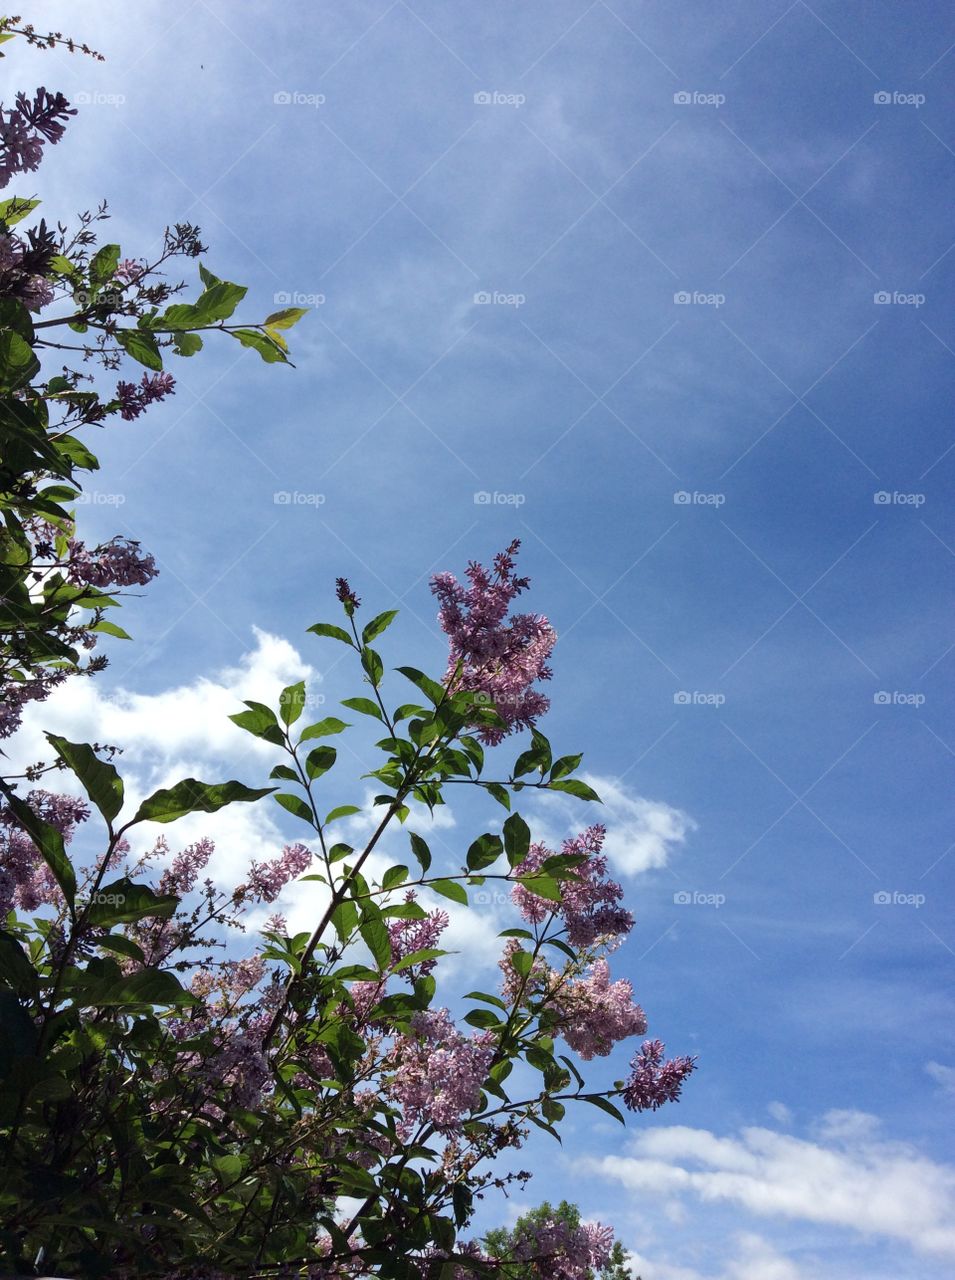 Lilac sky